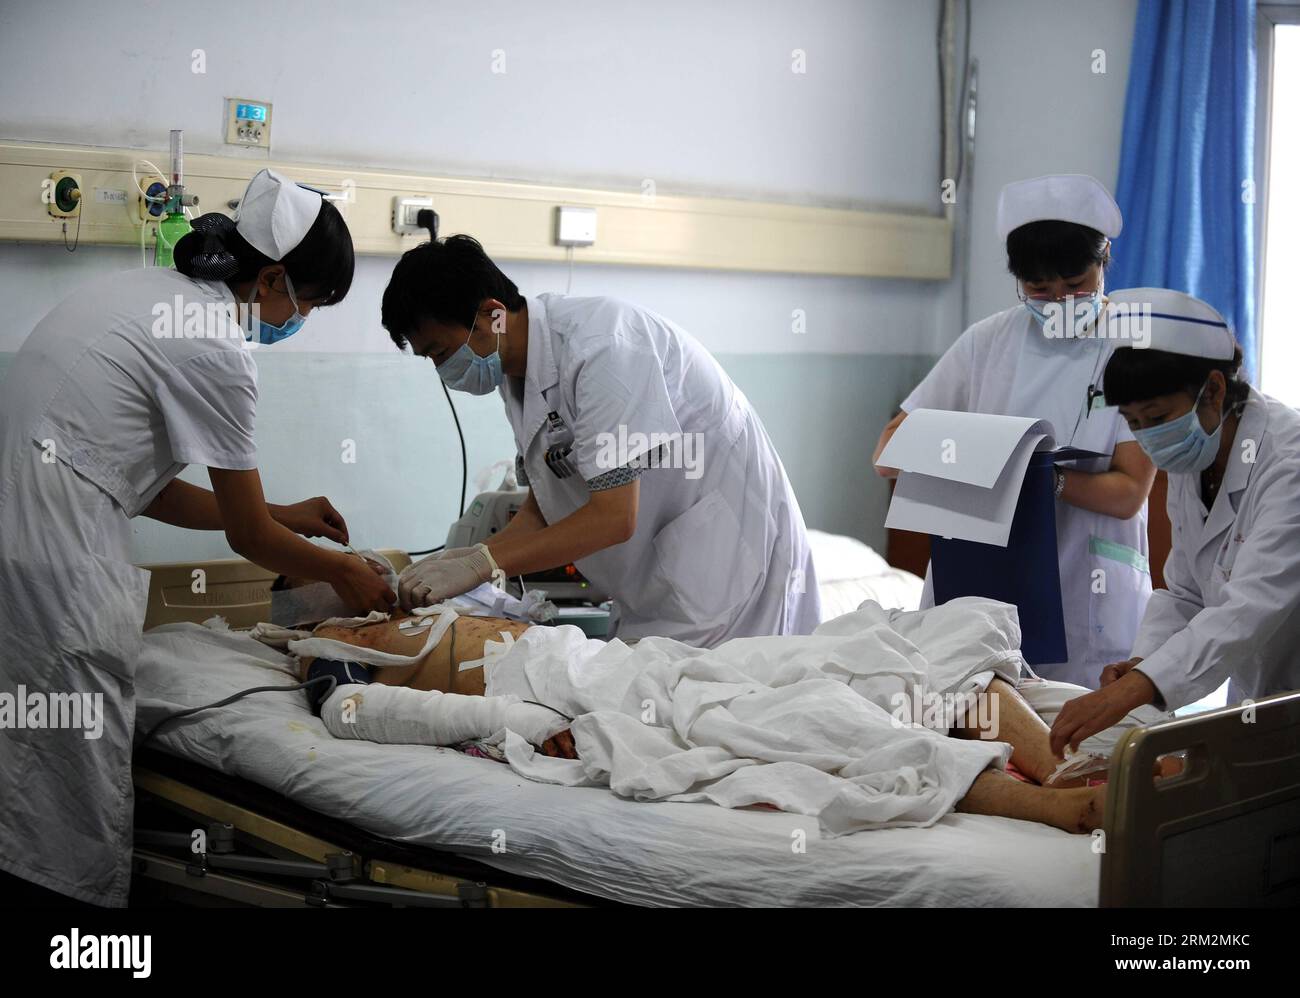 Bildnummer: 59882516 Datum: 21.06.2013 Copyright: imago/Xinhua (130621) -- SHUOZHOU, 21. Juni 2013 (Xinhua) -- eine verletzte Person wird in einem Krankenhaus in Shuozhou, nordchinesische Provinz Shanxi, am 21. Juni 2013 behandelt. Ein Feuer und eine anschließende Explosion, die Mittwochnacht durch ein Restaurant in Shuozhou gerissen wurde, hat mindestens drei Tote und 149 weitere verletzt, darunter 19 schwer verletzt. (Xinhua/Yan Yan) (zc) CHINA-SHANXI-SHUOZHOU-RESTAURANT EXPLOSIONSBEHANDLUNG (CN) PUBLICATIONXNOTXINXCHN Gesellschaft Gesundheit Krankenhaus Feuer Brand Opfer x0x xst 2013 quer 59882516 Datum 2 Stockfoto